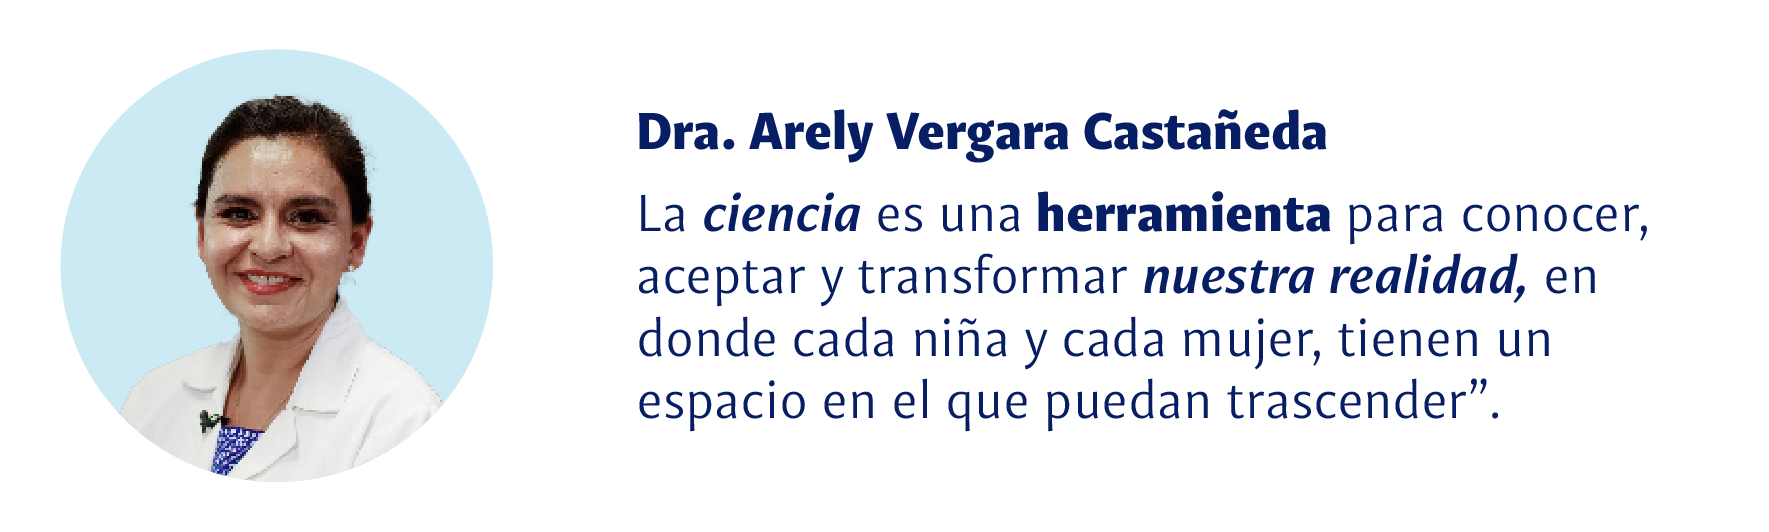 Dra. Arely Vergara Castañeda: La ciencia es una herramienta para conocer, aceptar y transformar nuestra realidad, en donde cada niña y cada mujer, tienen un espacio en el que puedan trascender.